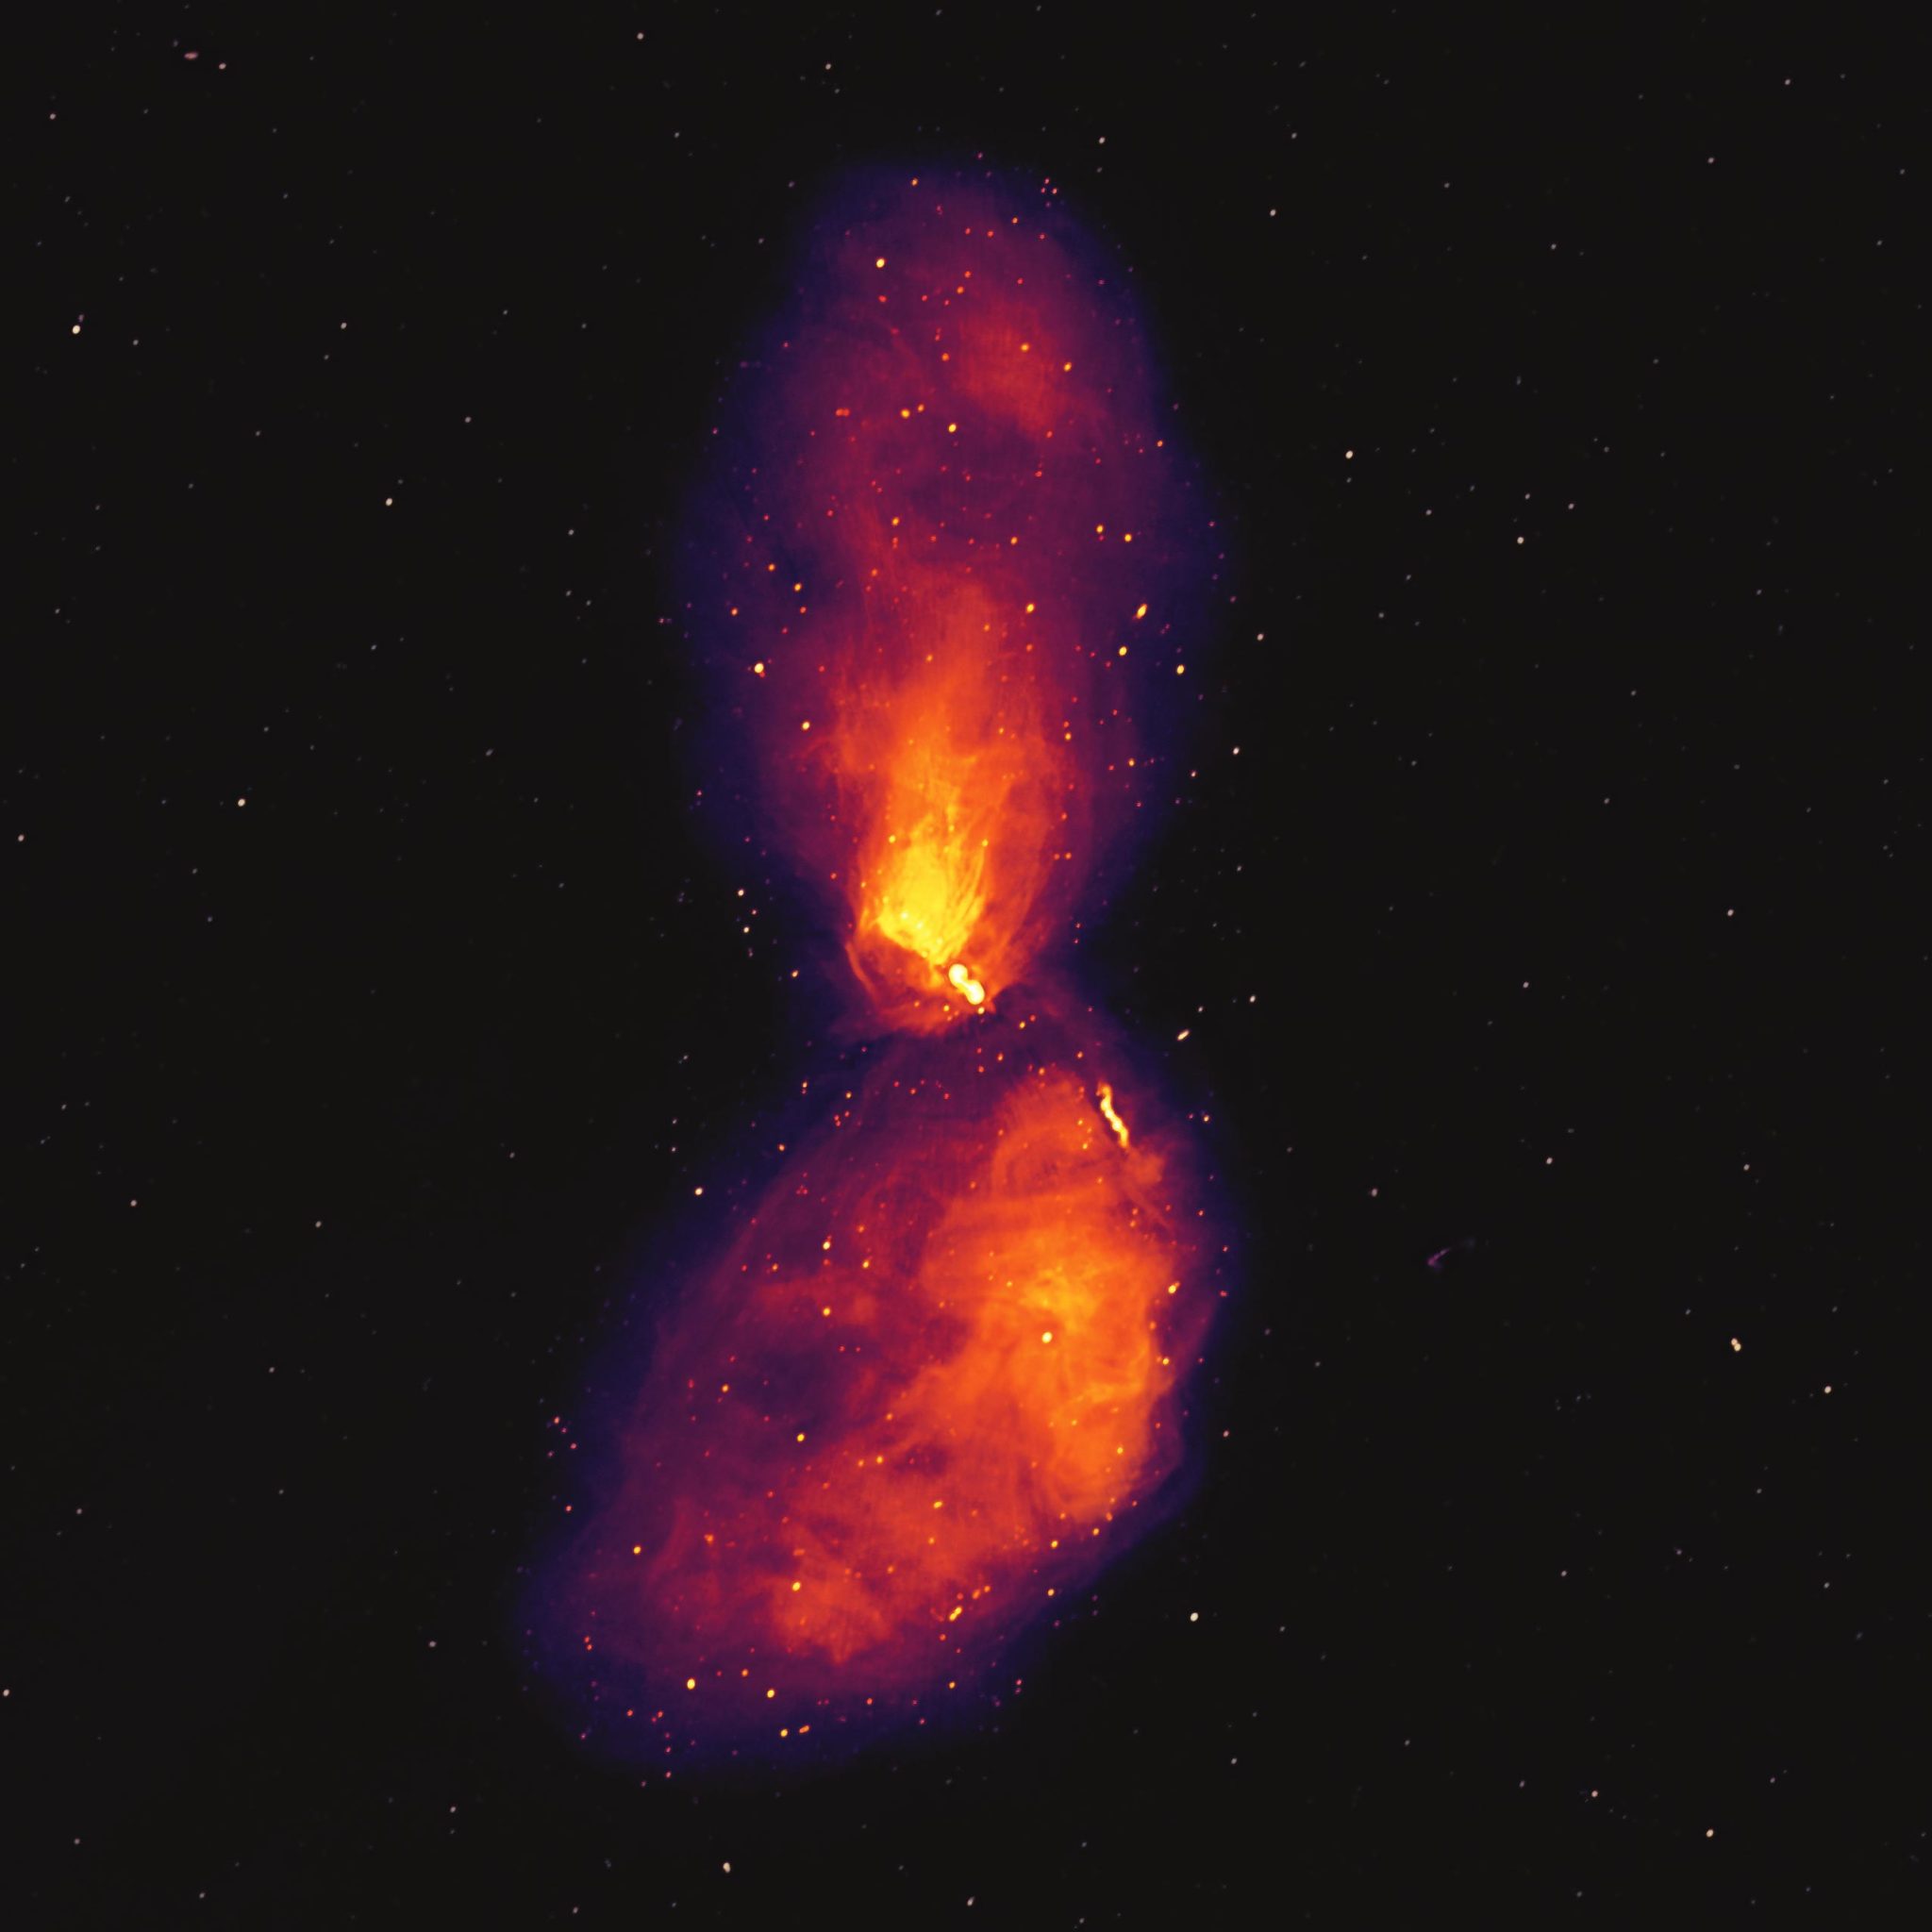 天文学家捕捉到地球附近超大质量黑洞爆发